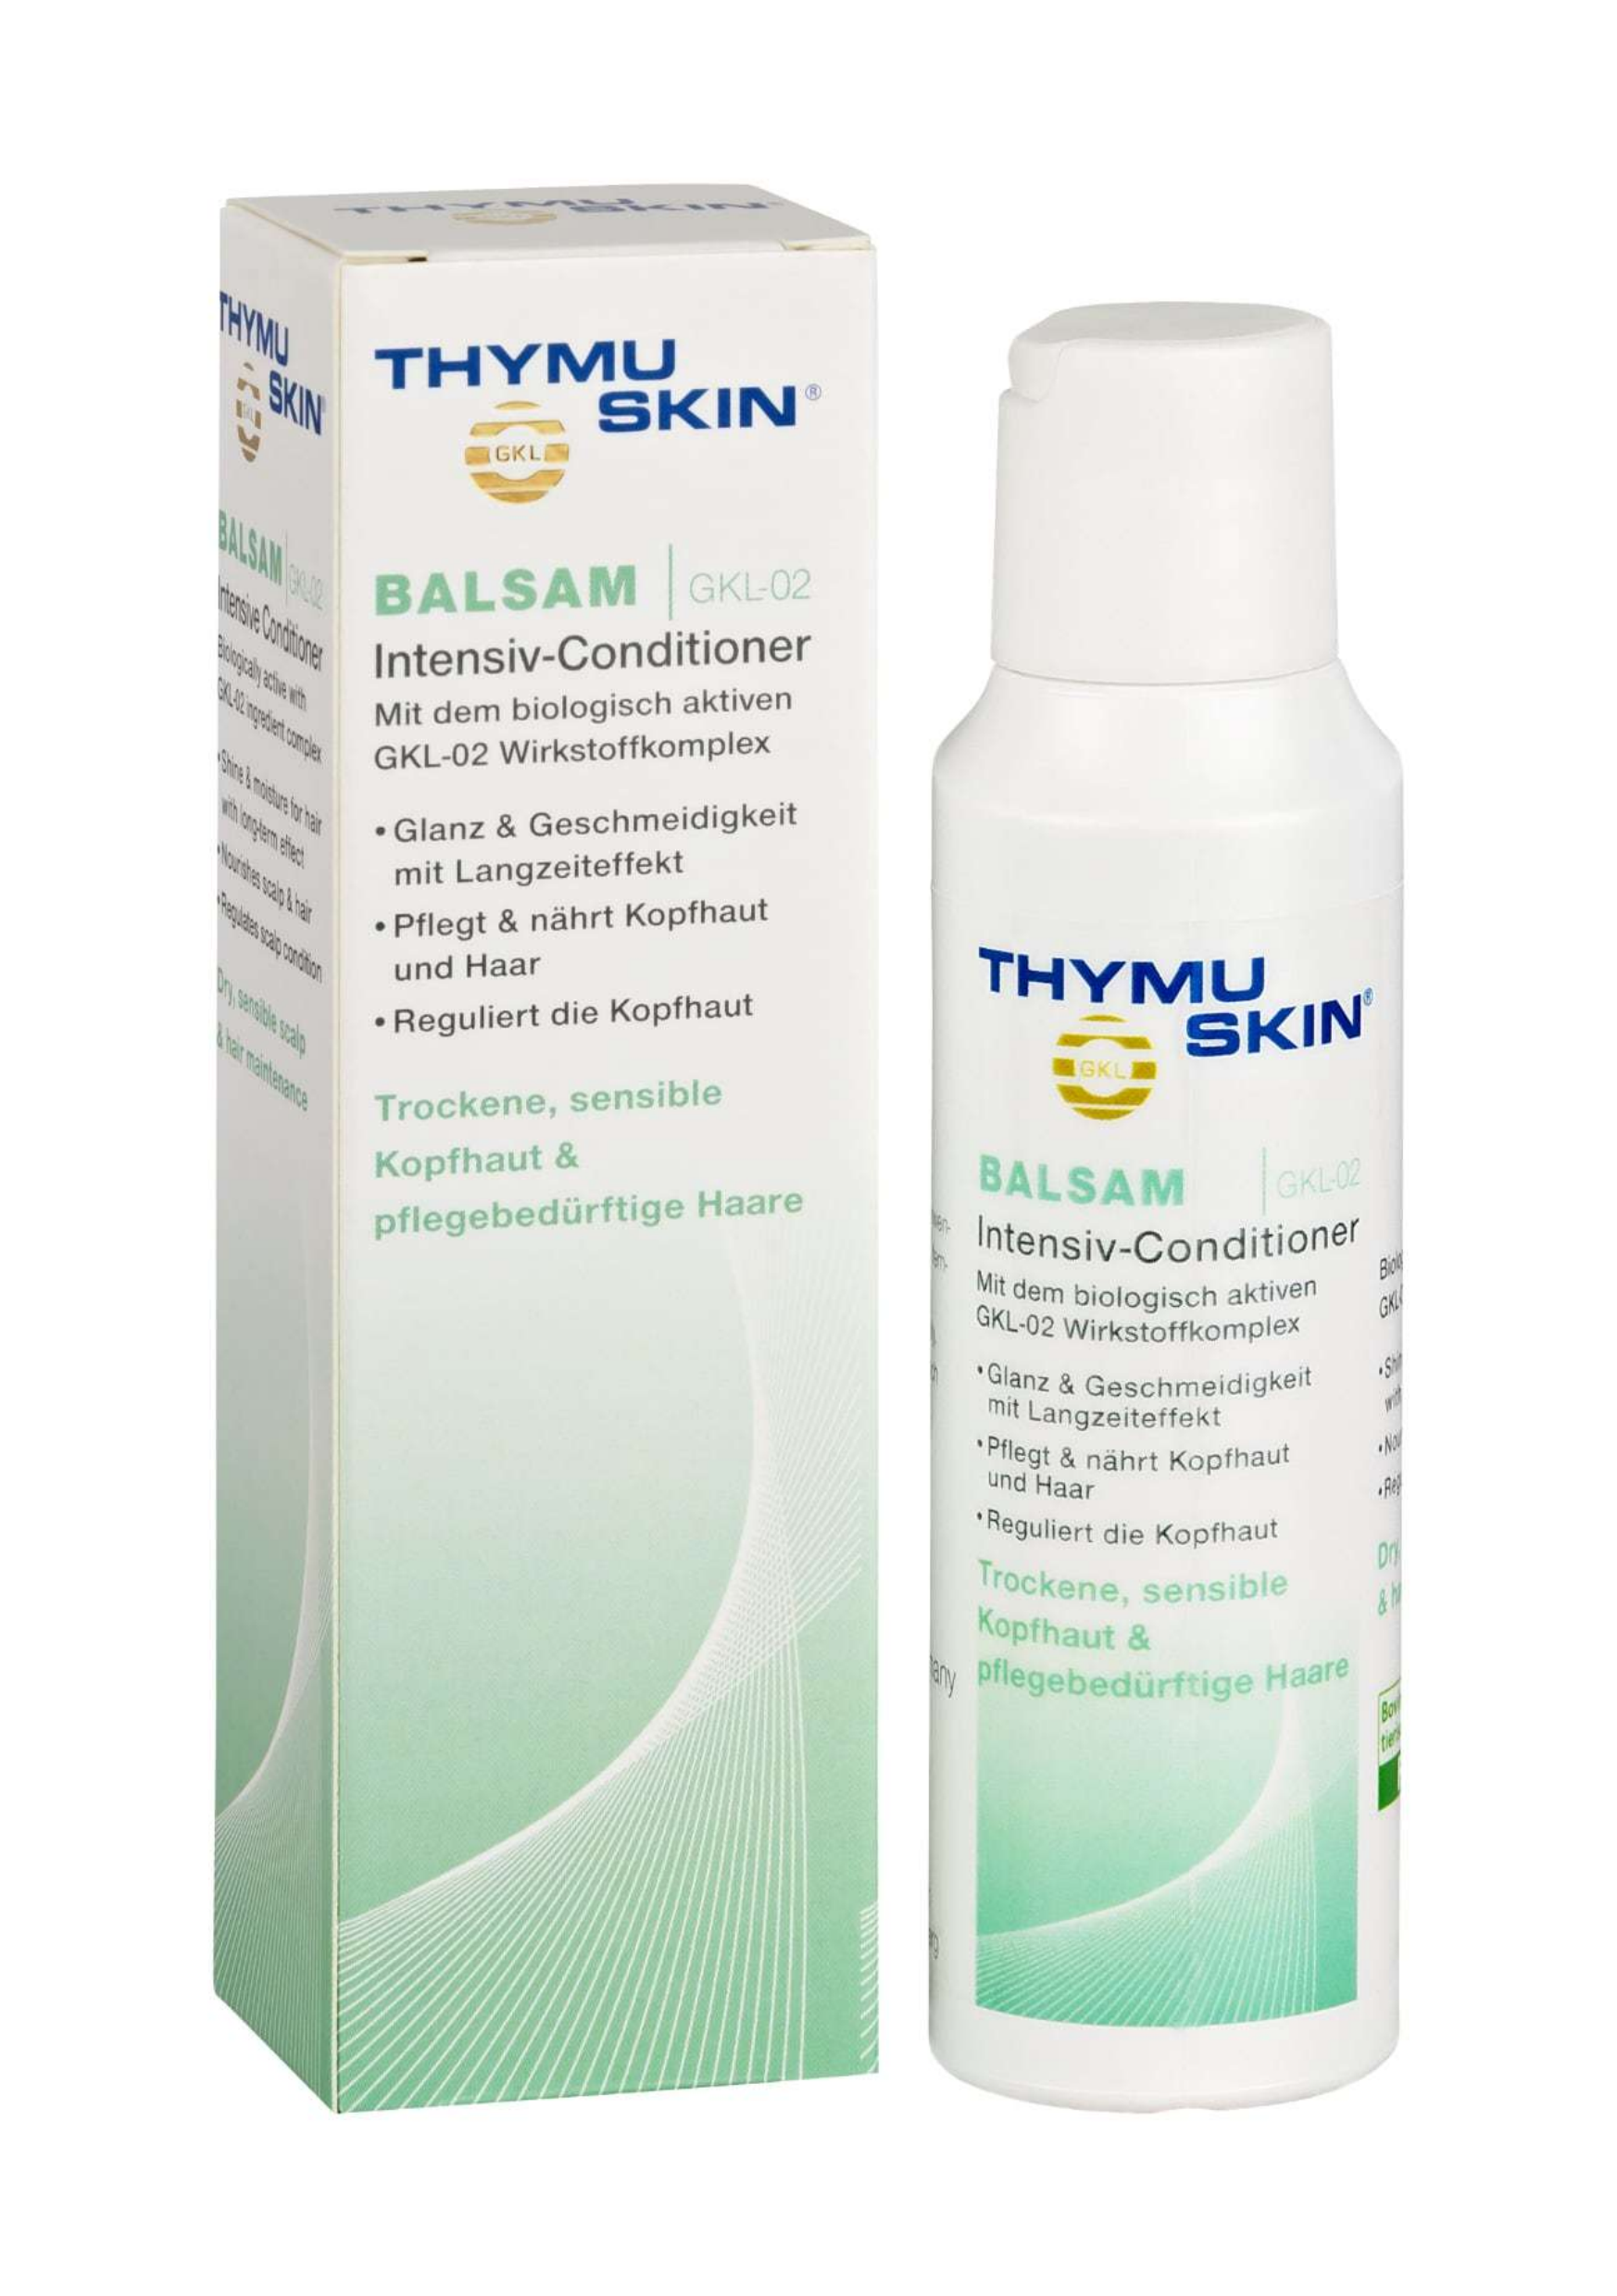 Thymuskin®Balsam Intensive Conditioner